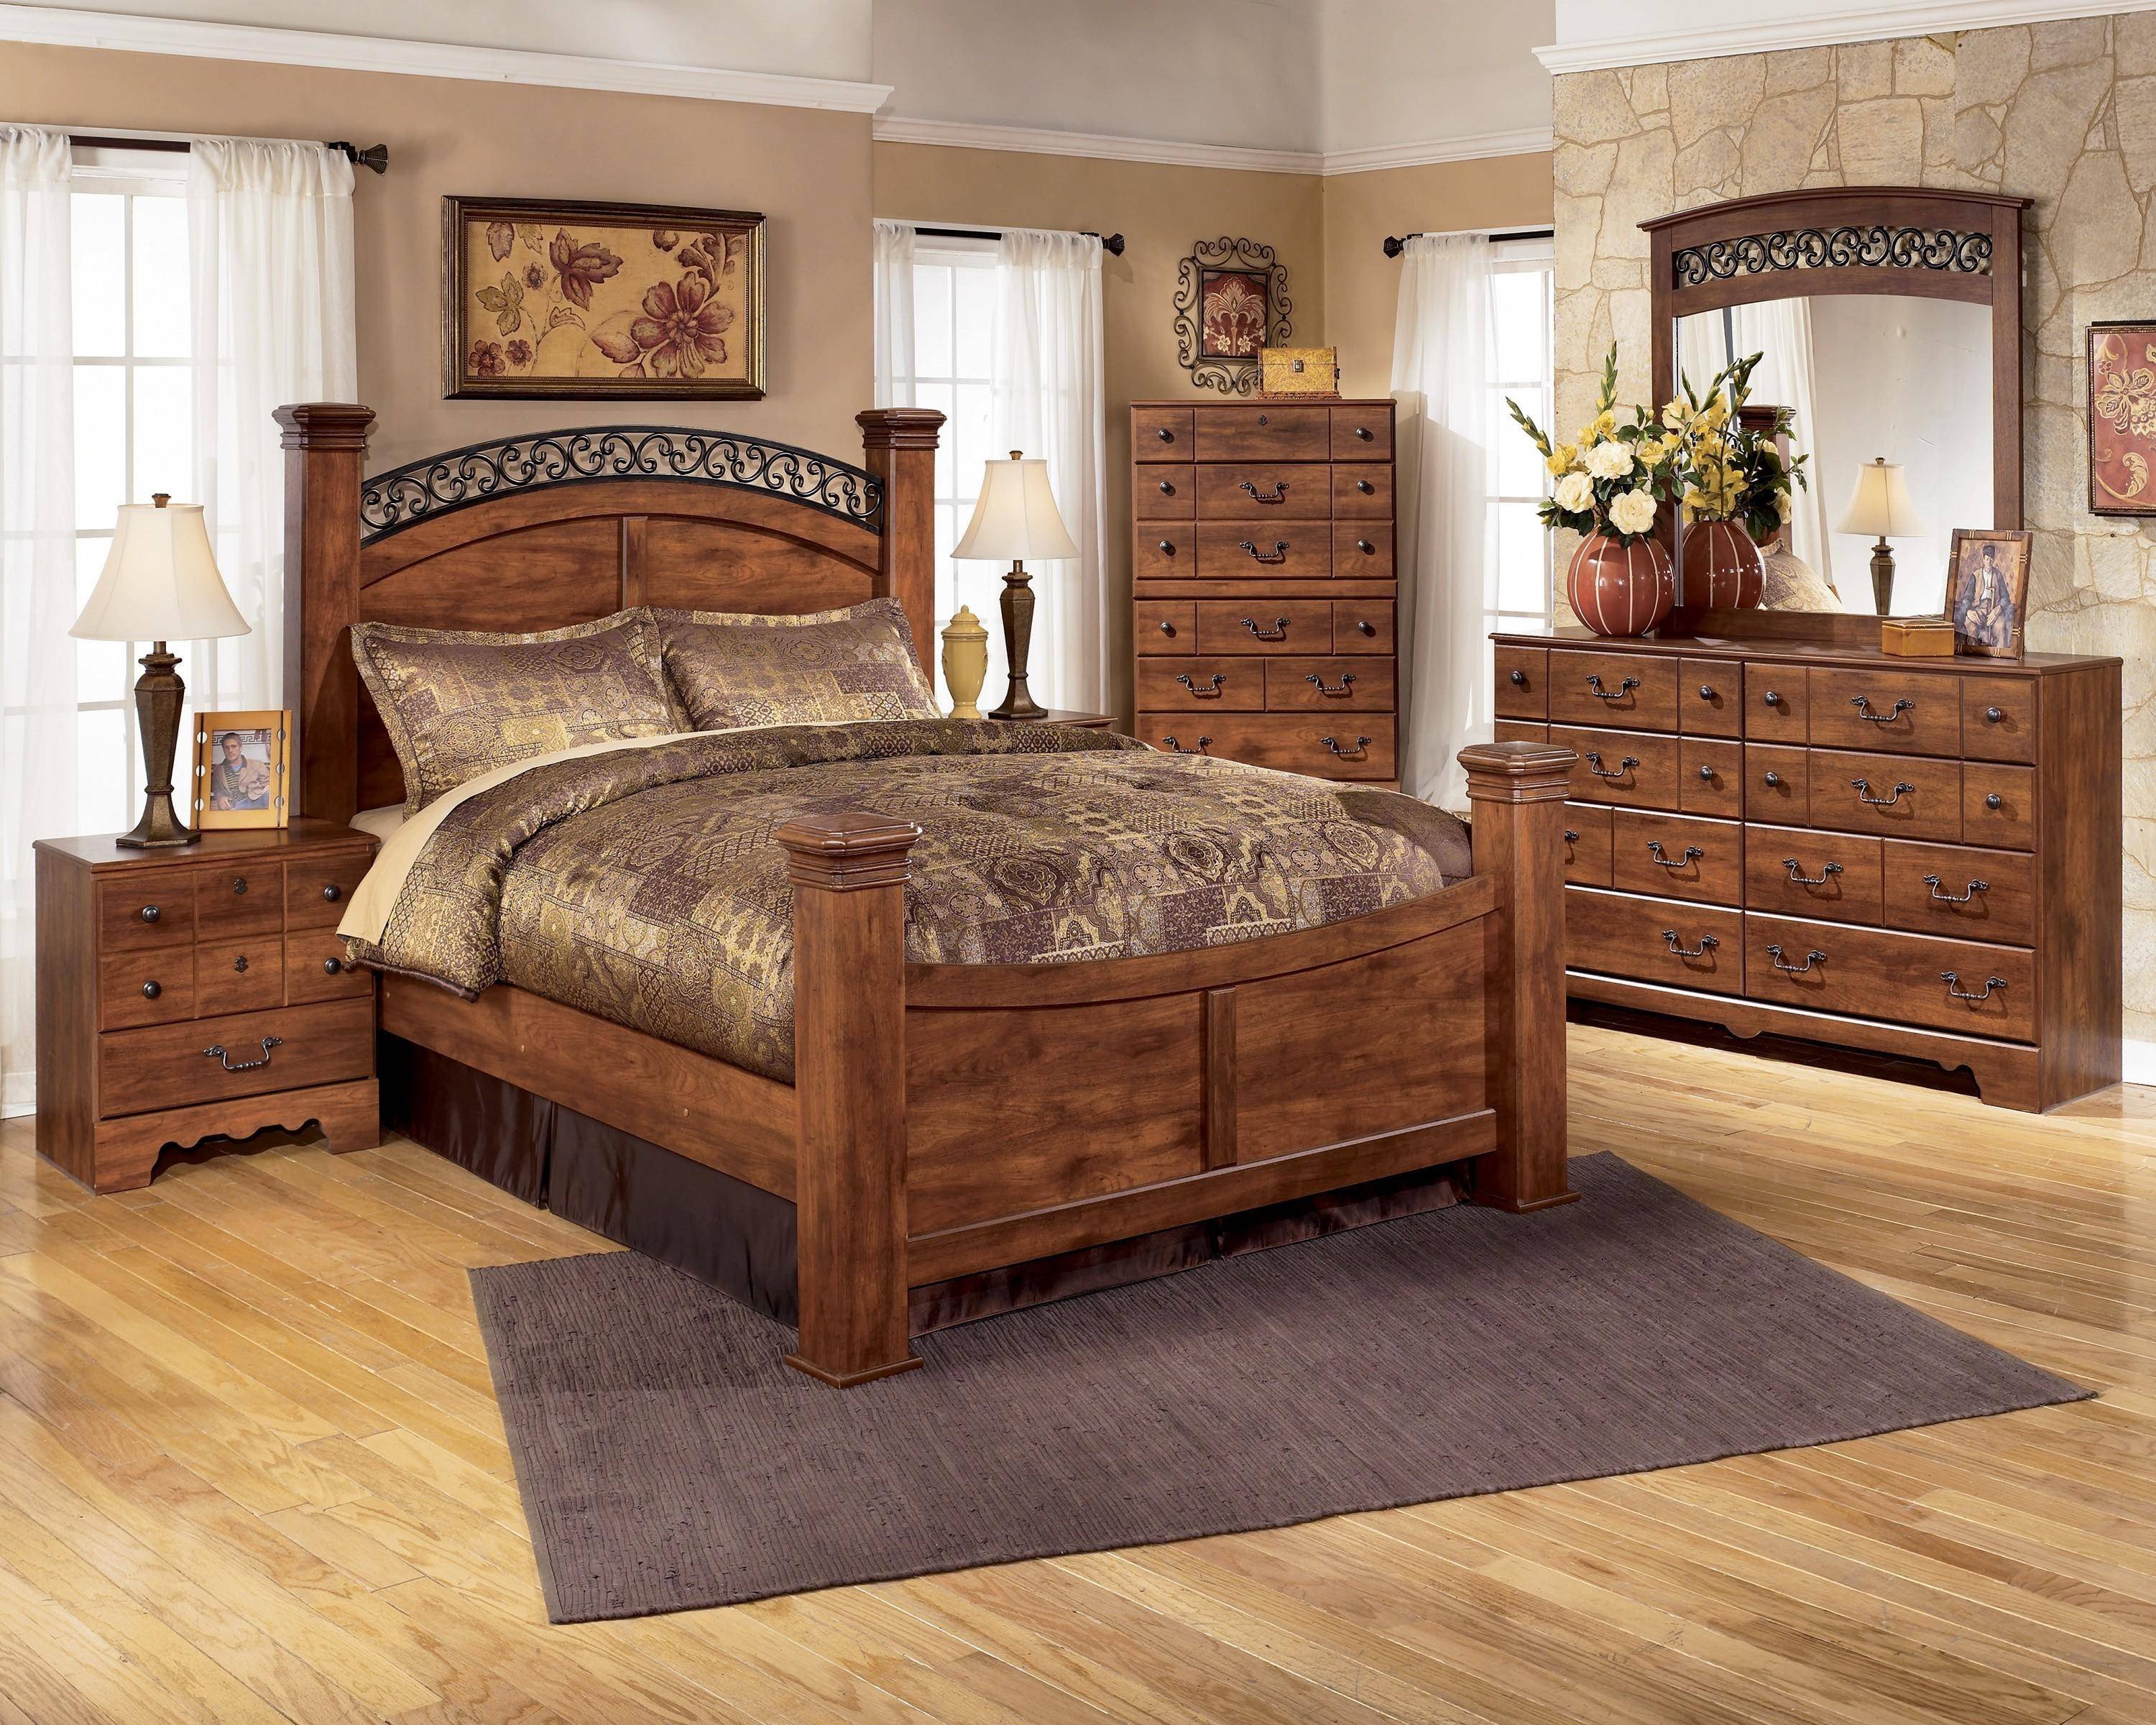 bob's furniture king size bedroom set